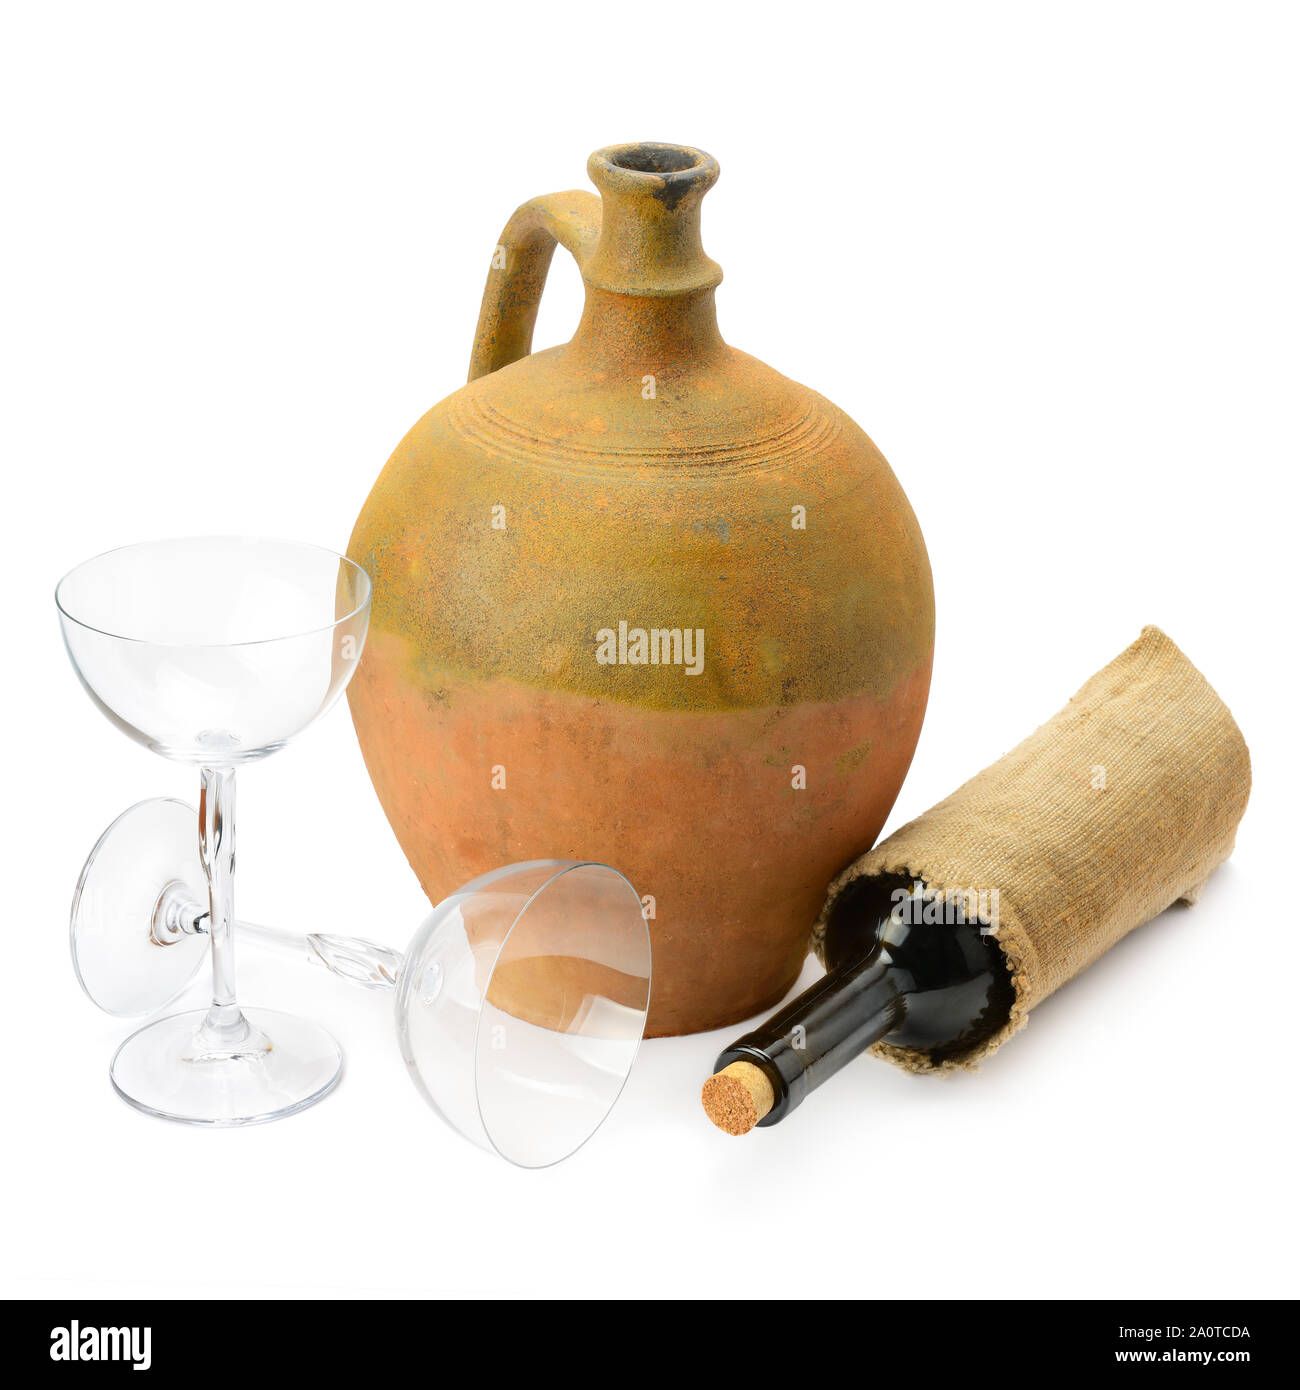 Weingläser, eine Flasche Wein und Amphoren auf weißem Hintergrund  Stockfotografie - Alamy